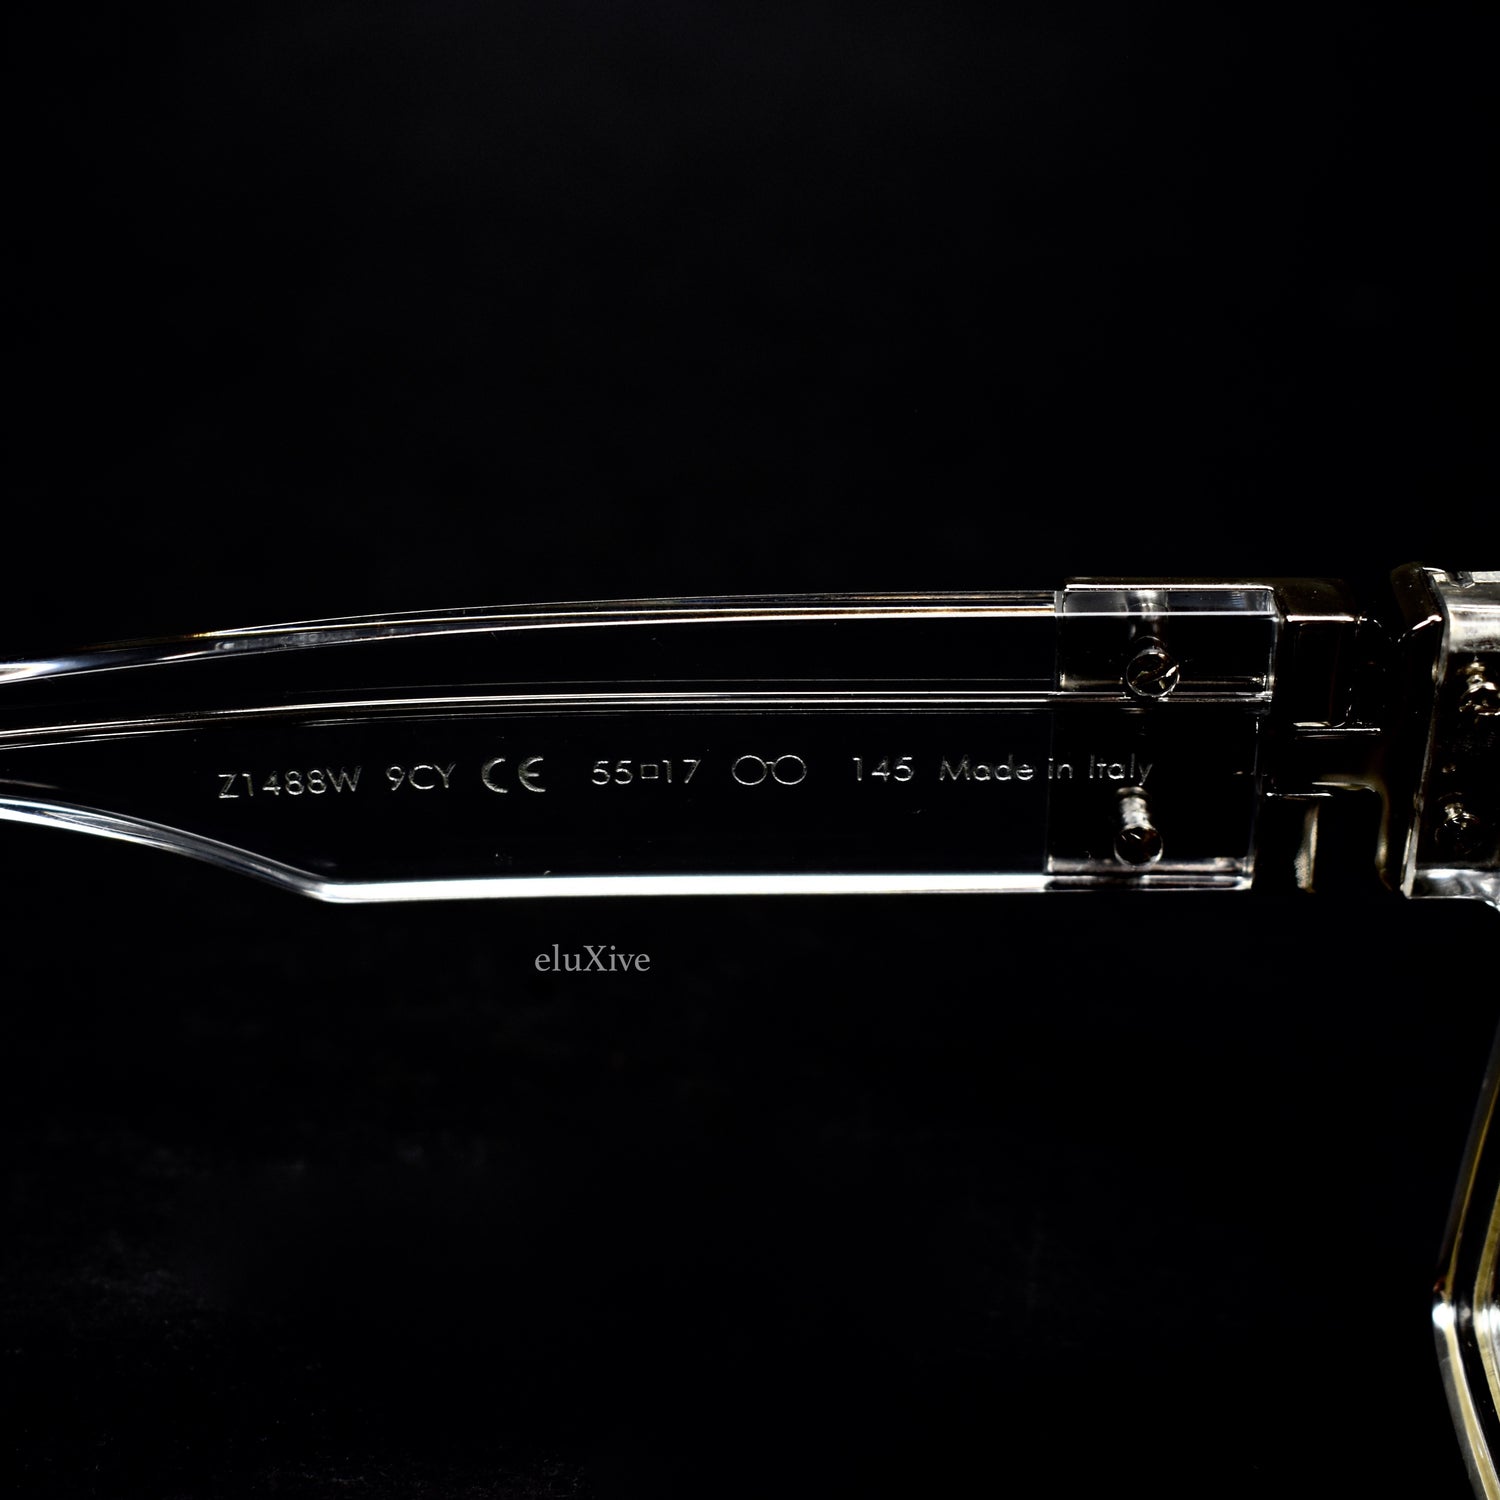 Louis Vuitton Transparent 2054 1.1 Millionaires Sunglasses Transparent pour  hommes